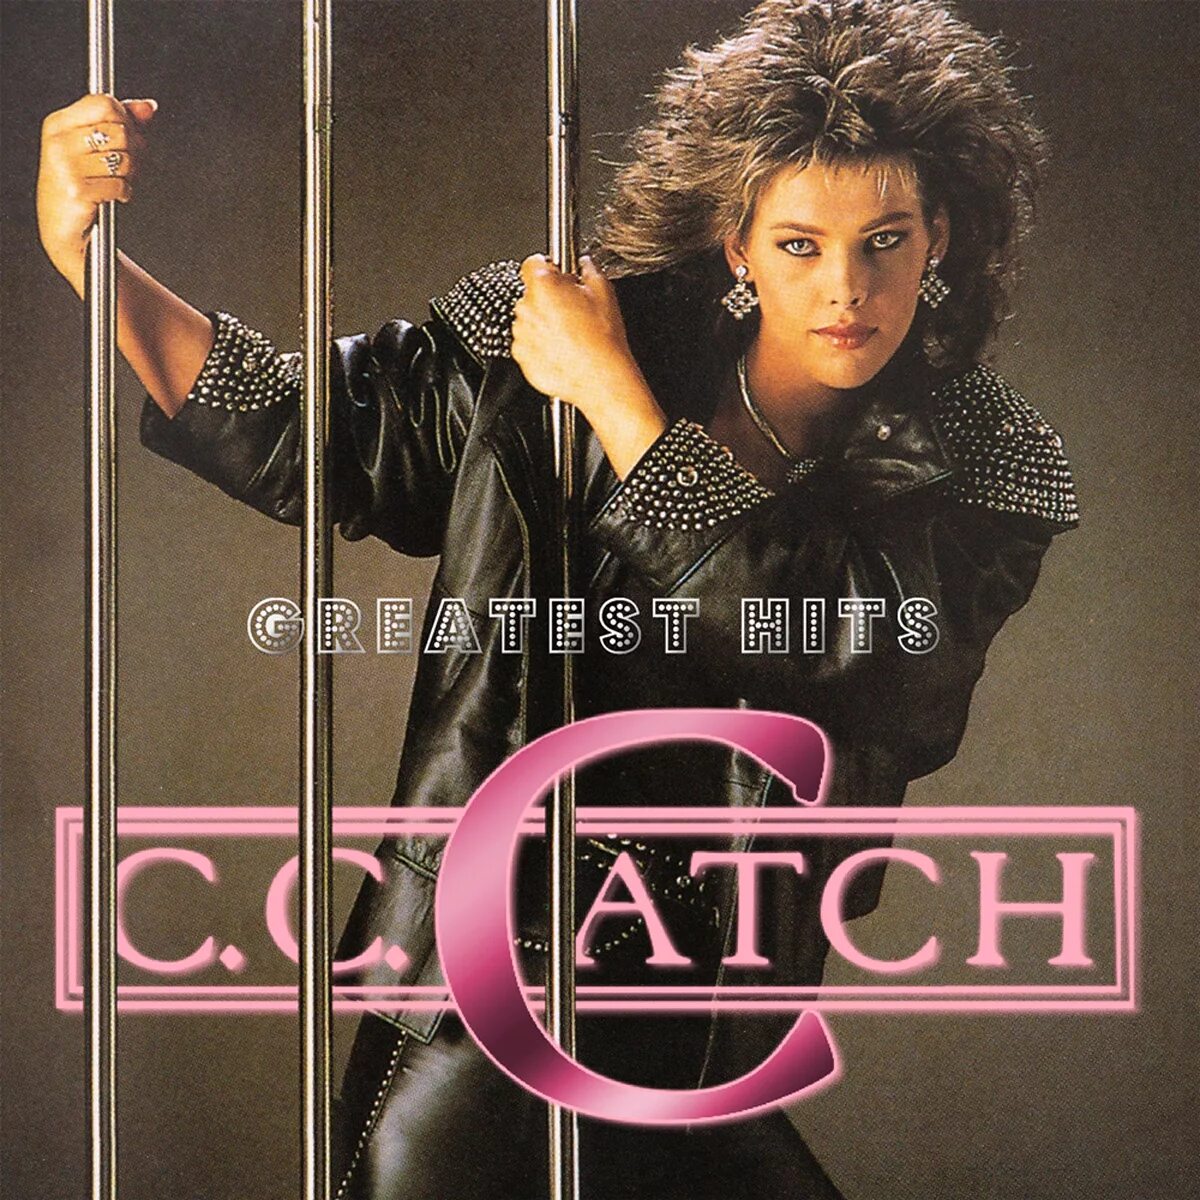 C C catch обложки альбомов. C C catch 1990. Cc catch CD. Cc catch оболочки альбомов. 1 час лучших песен